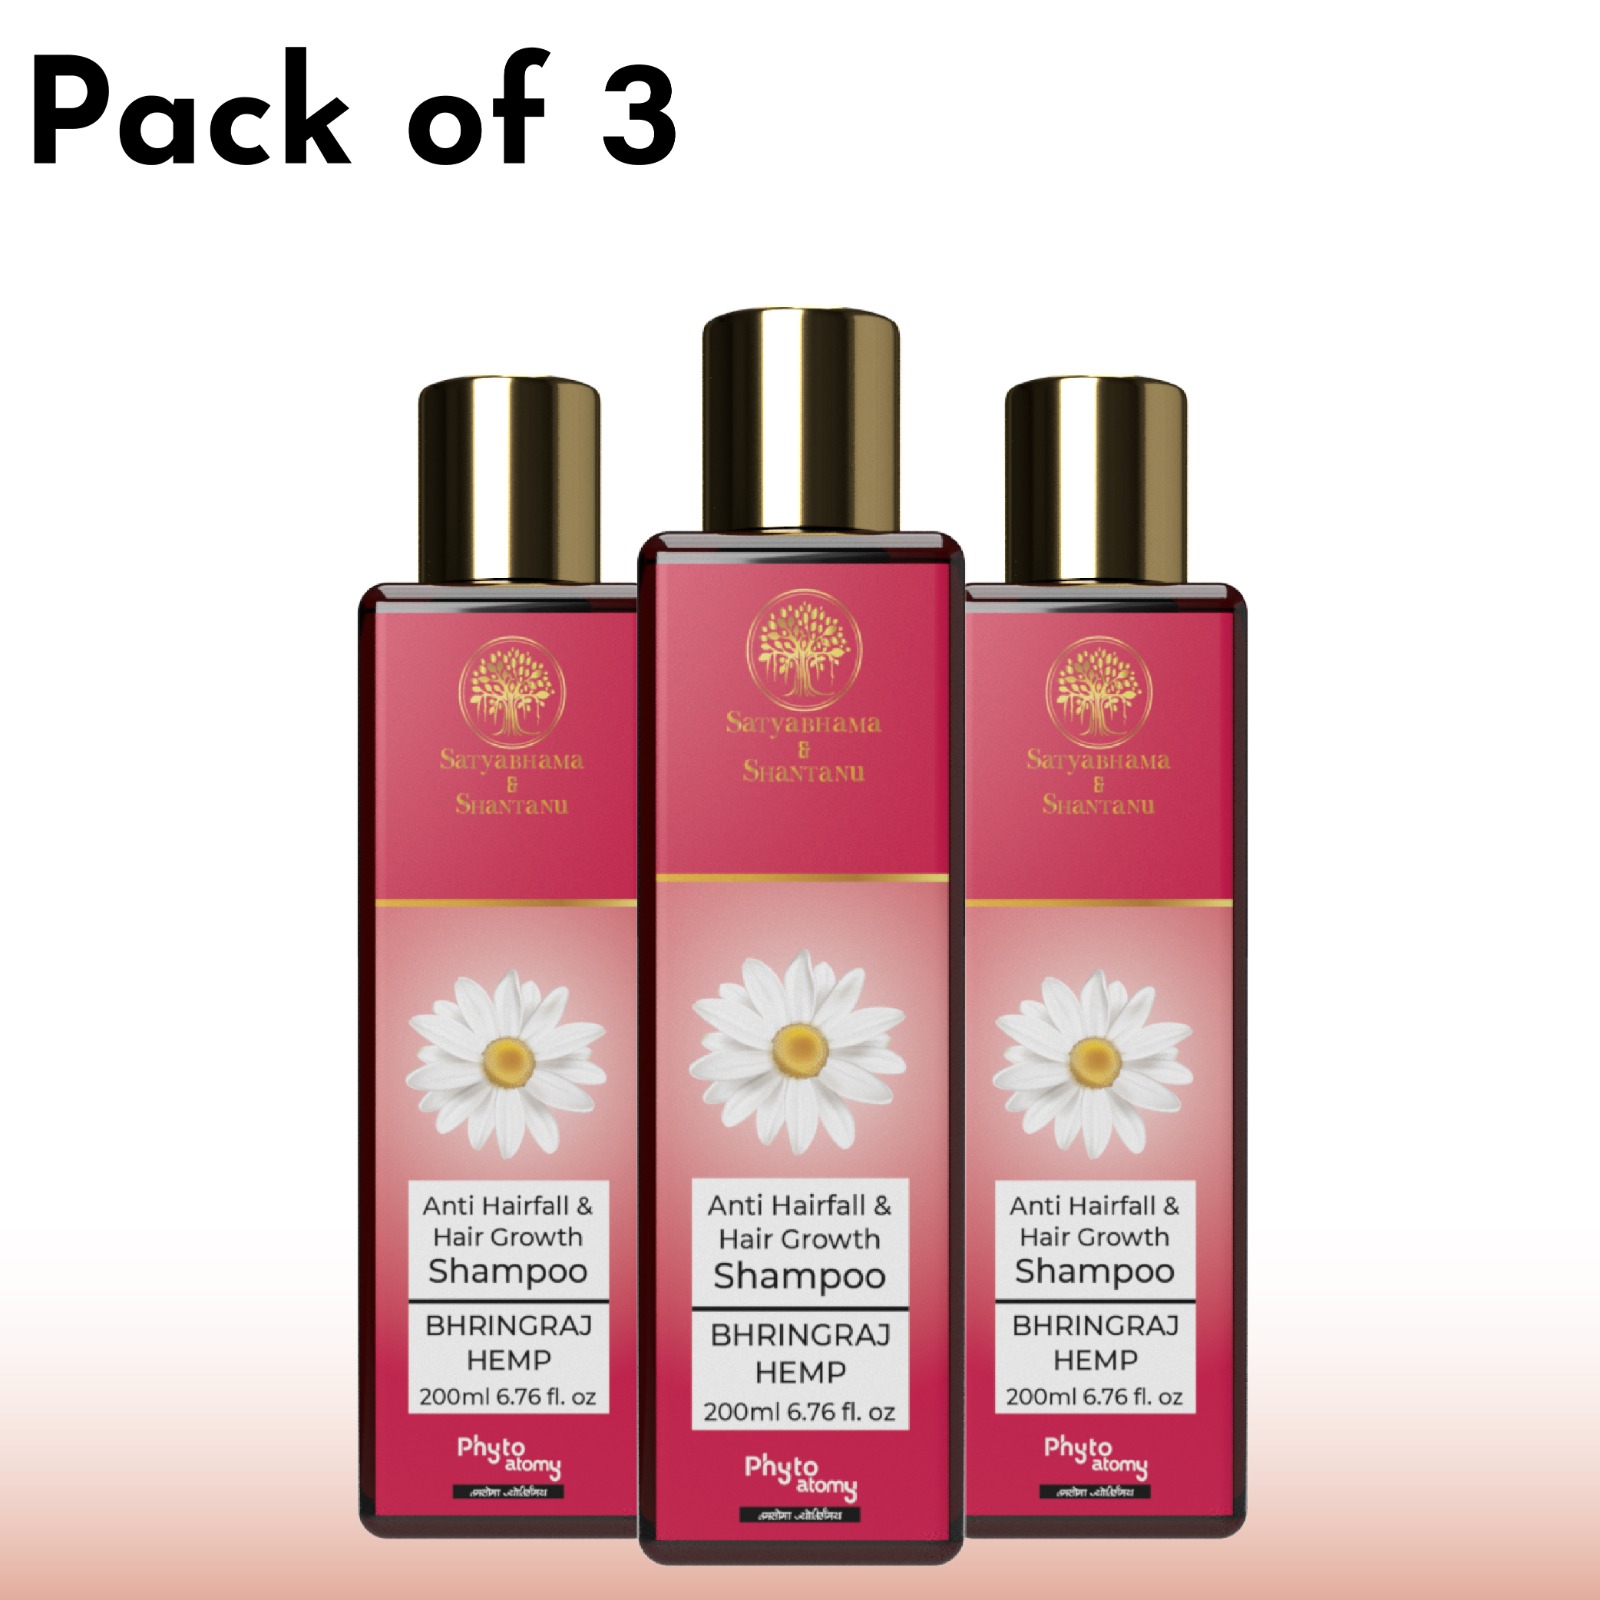 Bhringraj Hemp Shampoo (200 ml) Pack Of 3